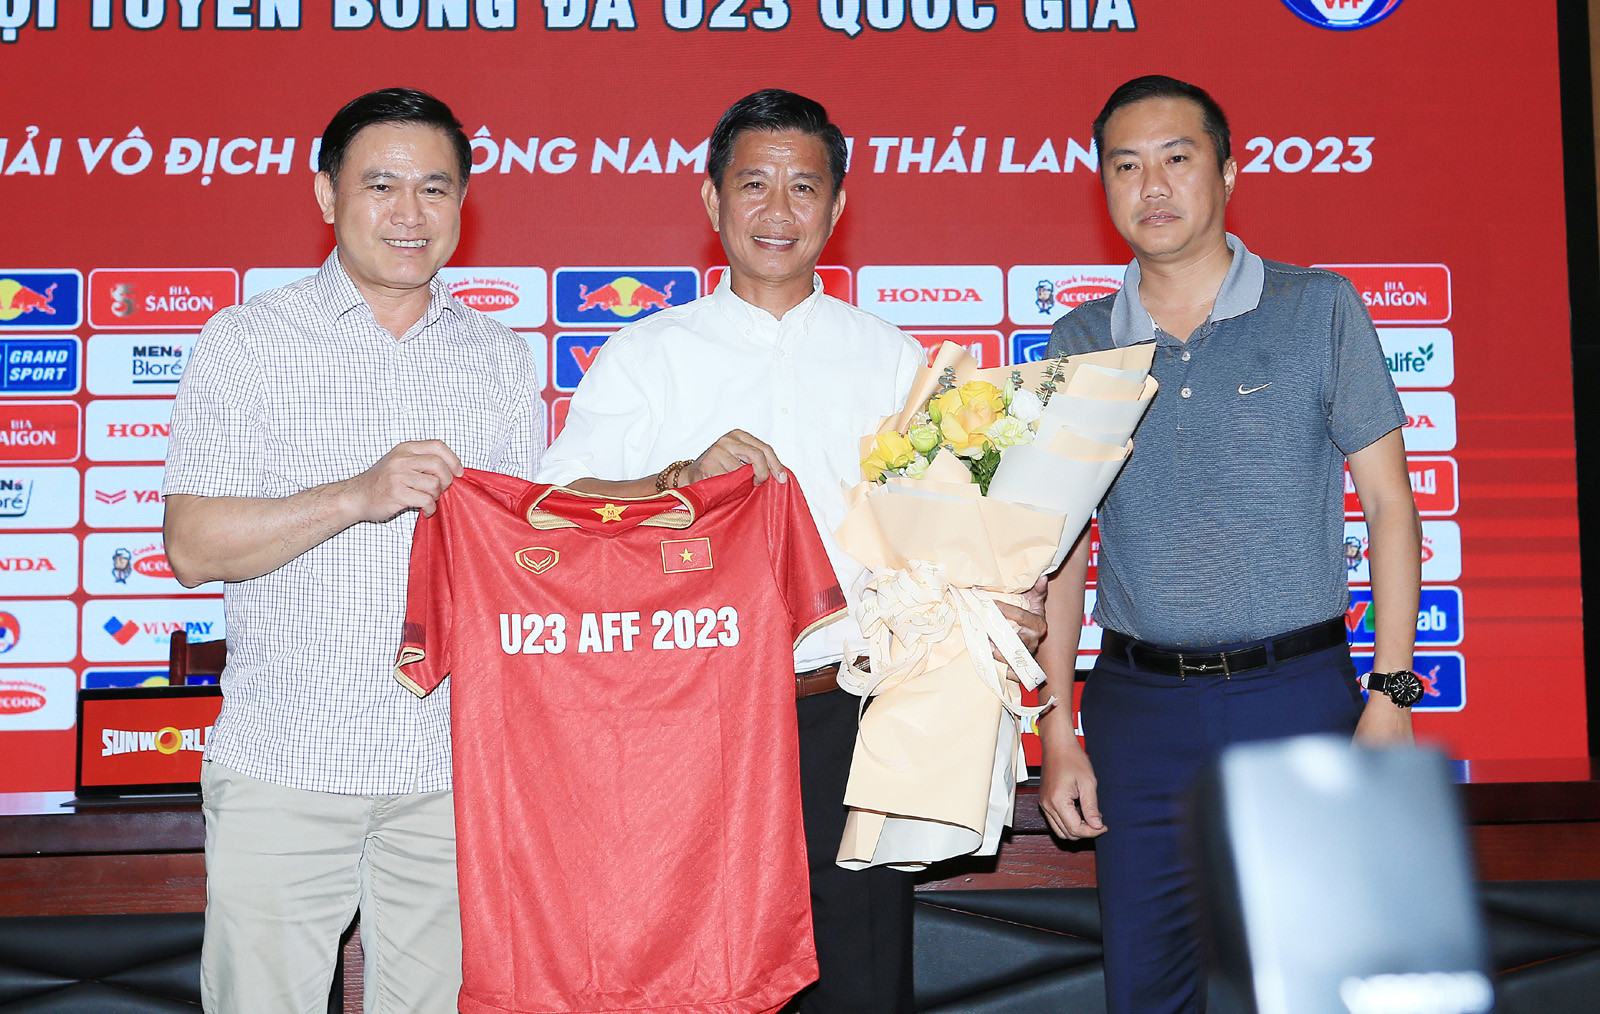 HLV Hoàng Anh Tuấn đối mặt với thách thứ không nhỏ với U23 Việt Nam